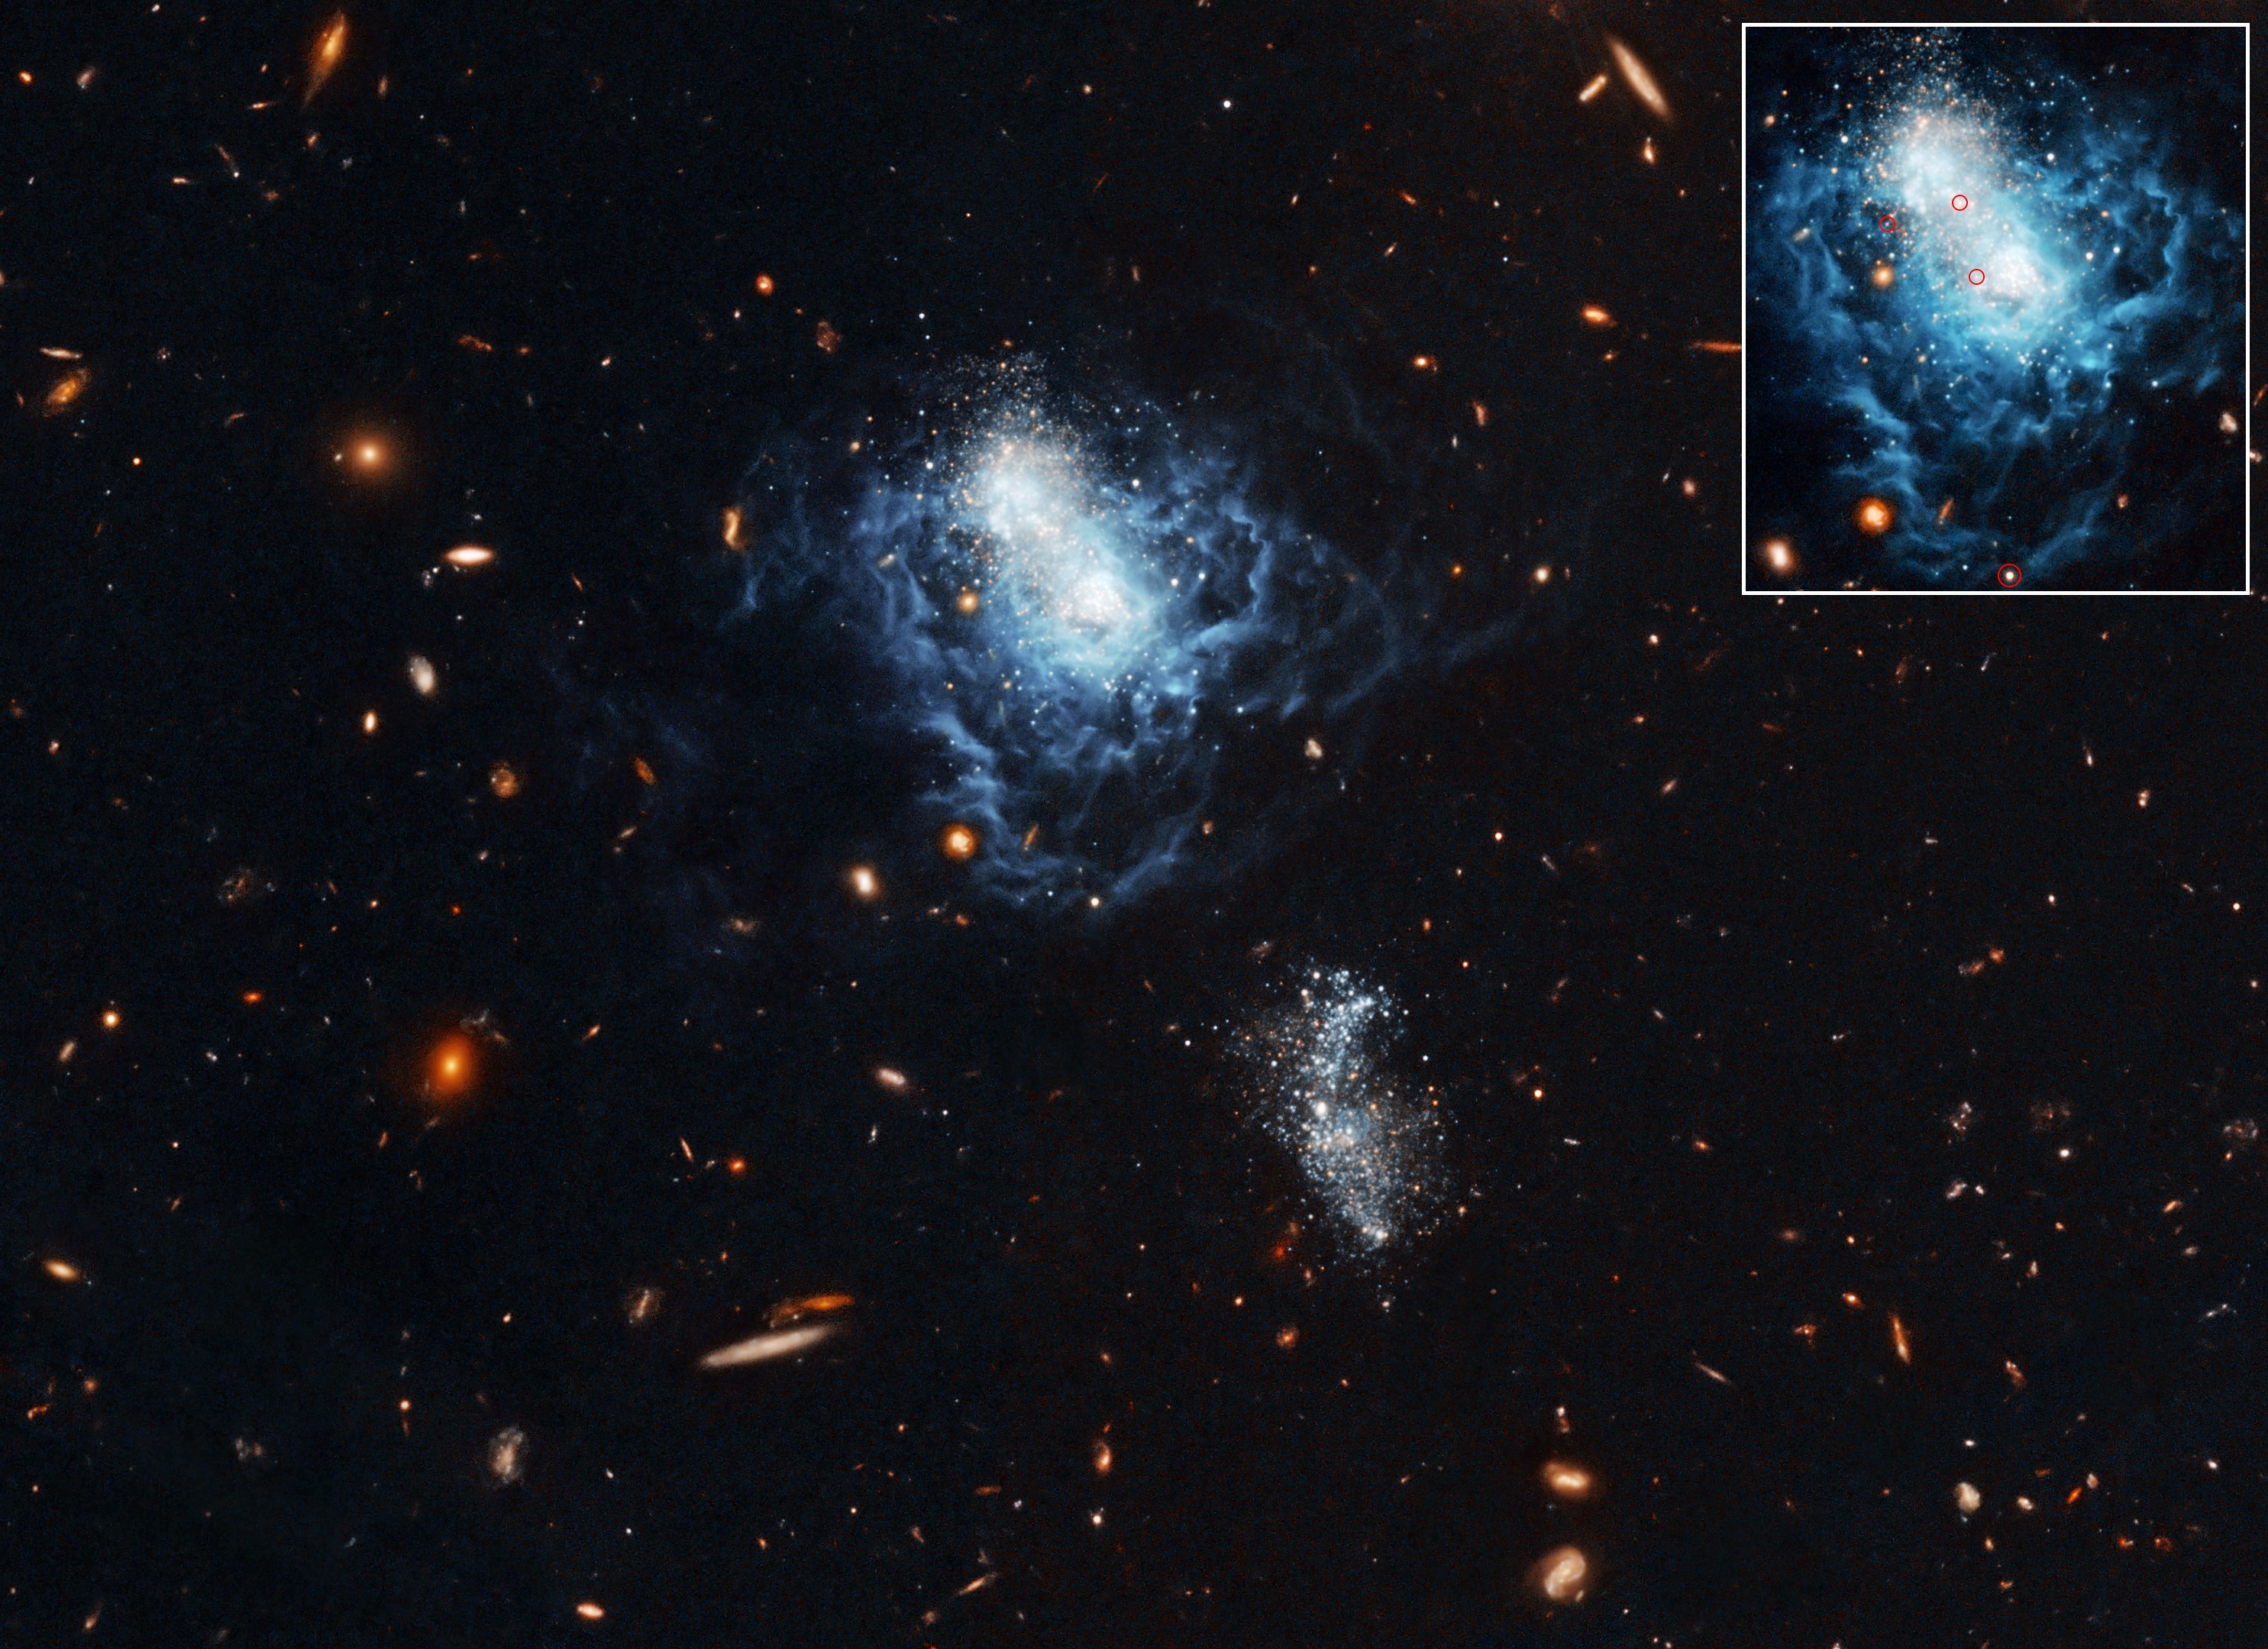 Na ilustracji: W centrum pola widzenia widać nieregularną galaktykę karłowatą I Zwicky 18 sfotografowaną około 2007 roku przez Teleskop Hubble w „sztucznych” kolorach (barwa niebieska → λ~0,66μm, barwa pomarańczowa → λ~0,814μm). Poniżej I Zw 18 – nieco po prawej stronie, znajduje się mniejsza galaktyka towarzysząca podobnego typu, która skrzy się białymi i niebieskimi gwiazdami. We wstawce u góry po prawej stronie widać galaktykę I Zw 18 z zaznaczonymi w czerwonych okręgach cefeidami, które pozwoliły wyznaczyć dokładnie odległość do  tej galaktyki (zwiększyła się ona do 59 mln. l.św. - o prawie 10 mln l.św. więcej względem wcześniejszych wyznaczeń). Źródło: NASA, ESA and A. Aloisi (ESA/STScI